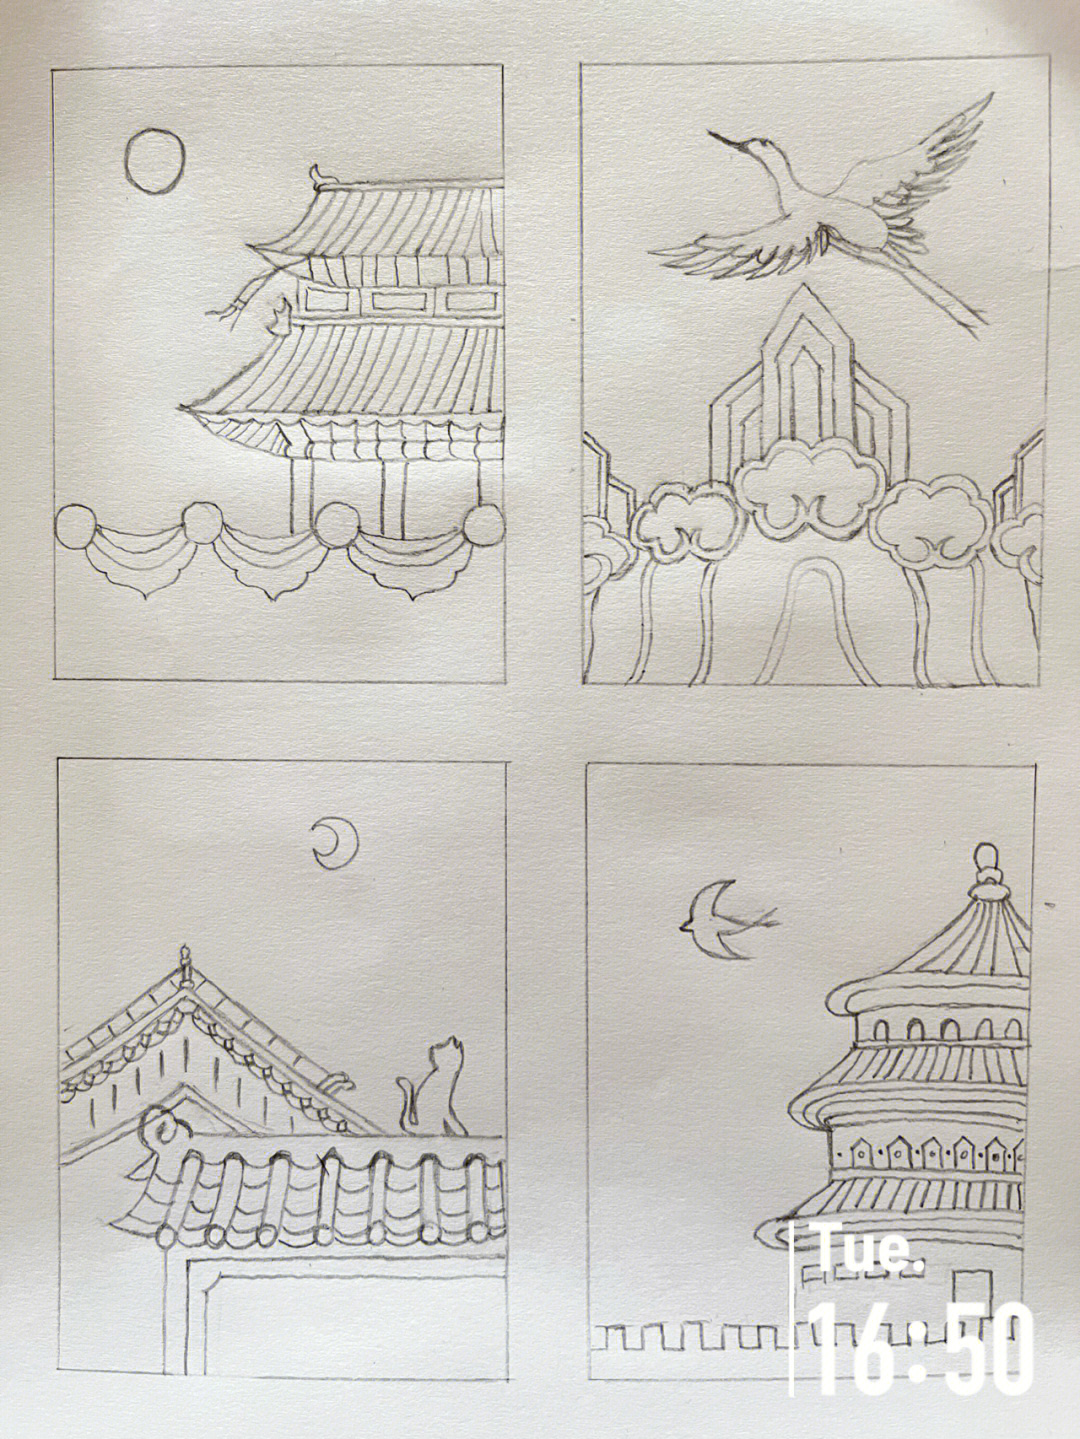 北京故宫简笔画 绘画图片